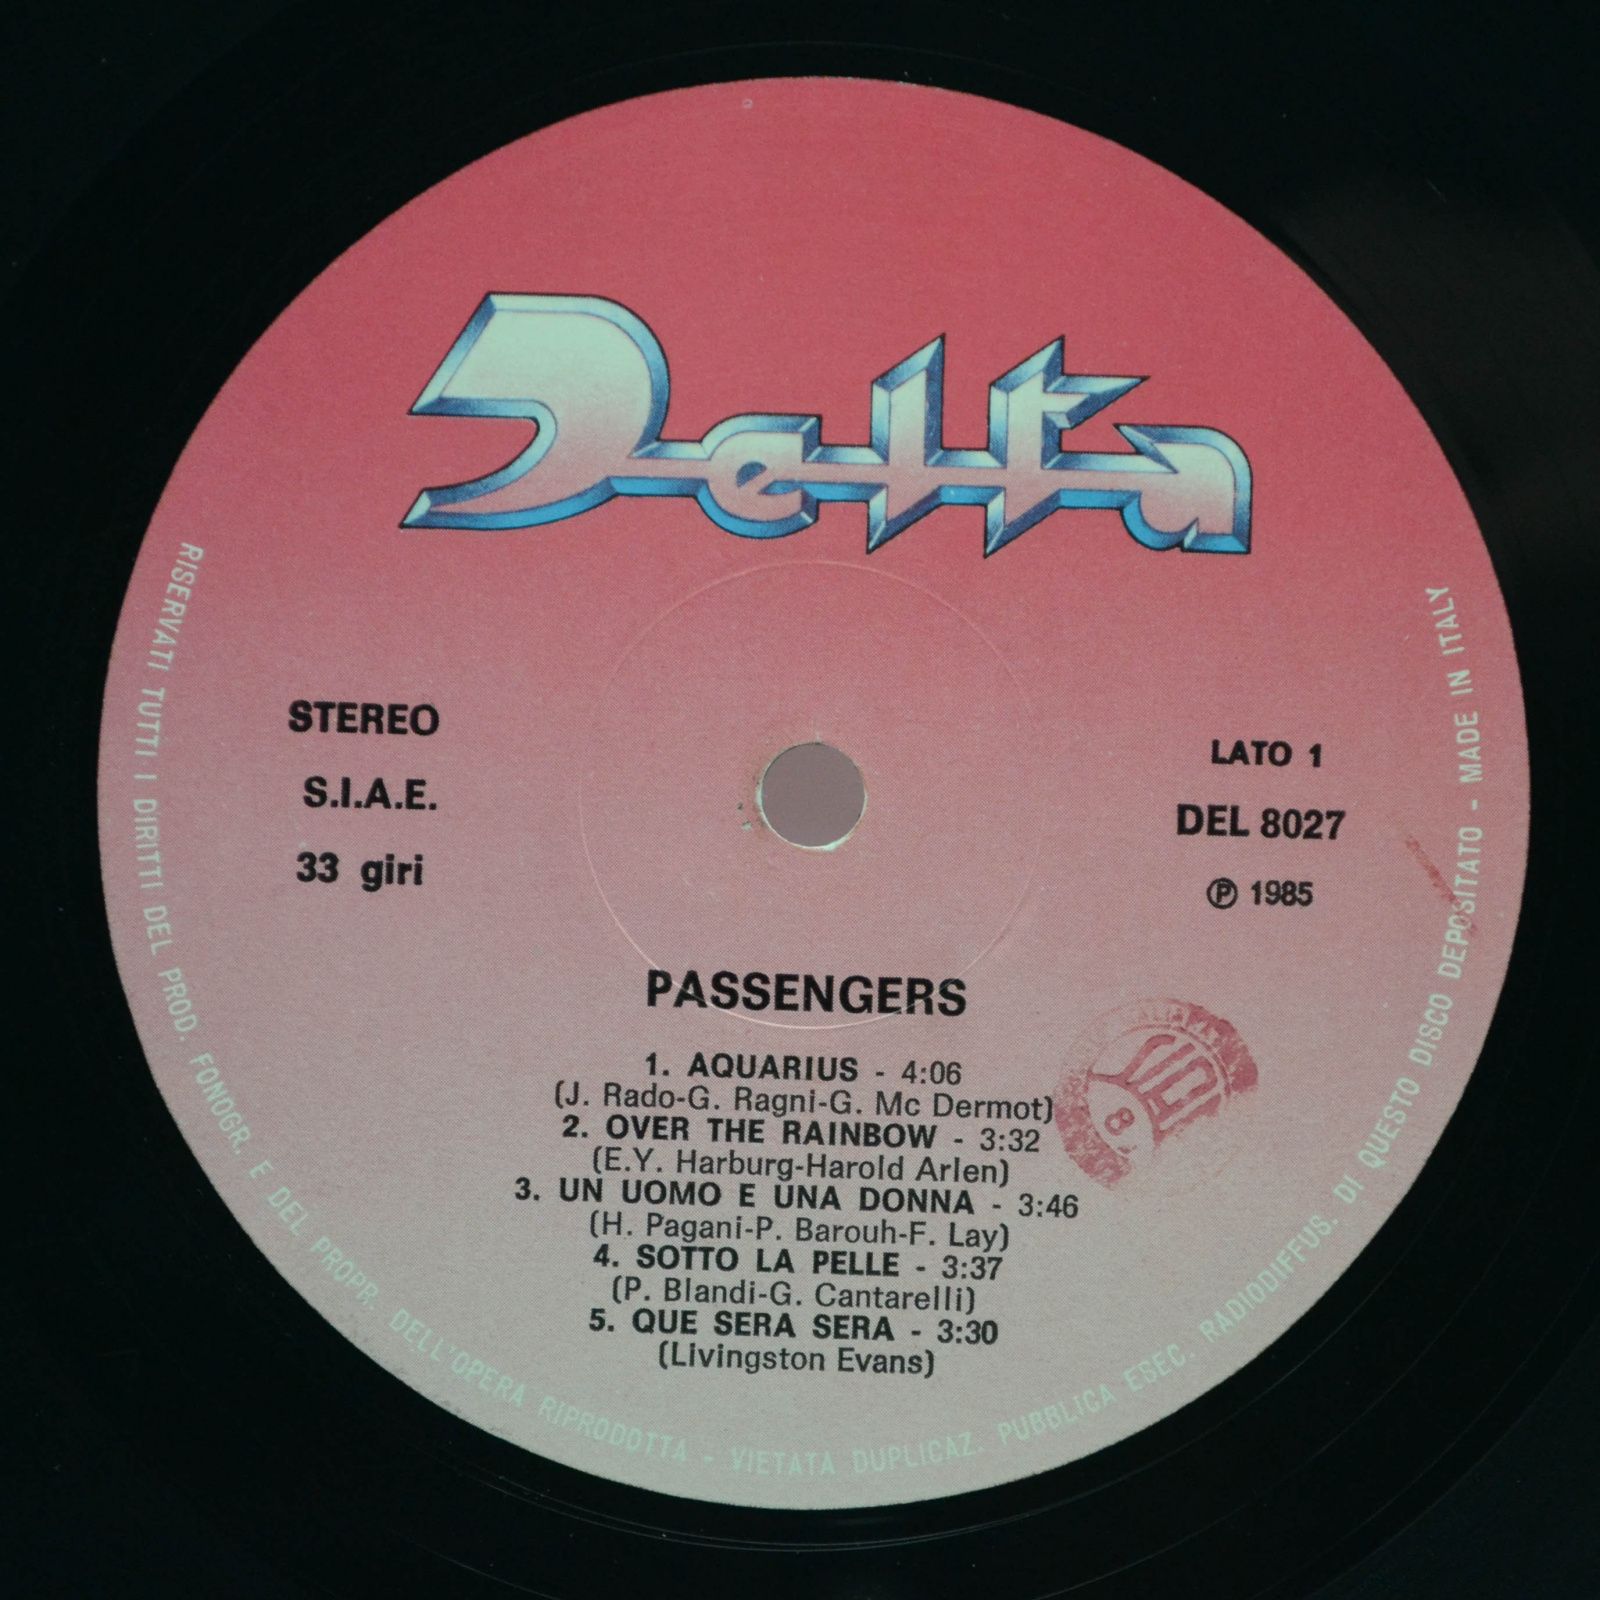 Passengers — New Album (Автограф, Italy), 1985